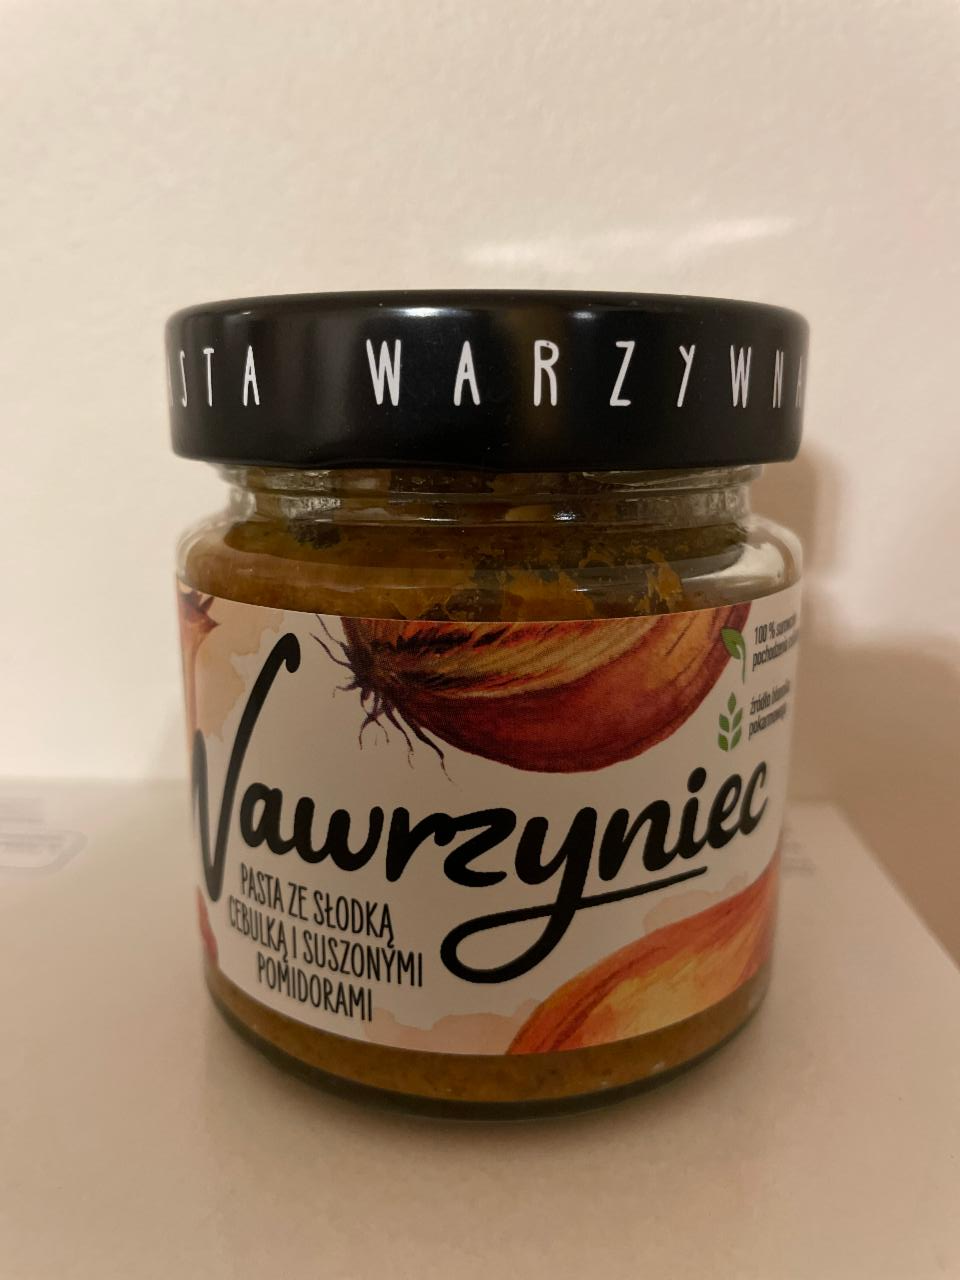 Фото - Паста из сладкого лука и сушеных помидоров Wawrzyniec